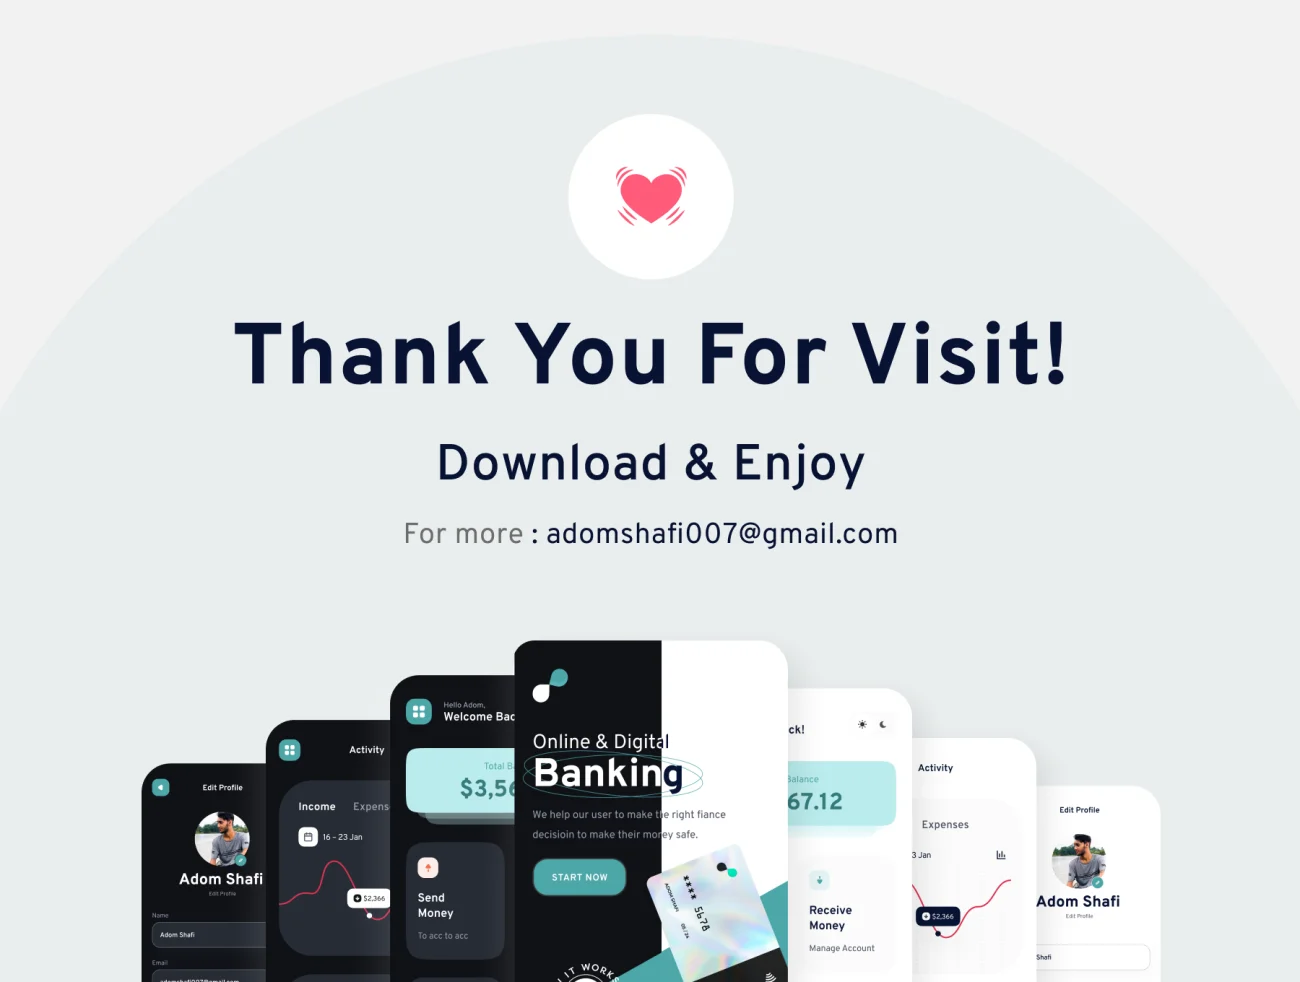 90屏手机银行金融理财电子钱包应用UI设计套件 Bankboo Mobile Banding App Kit插图15